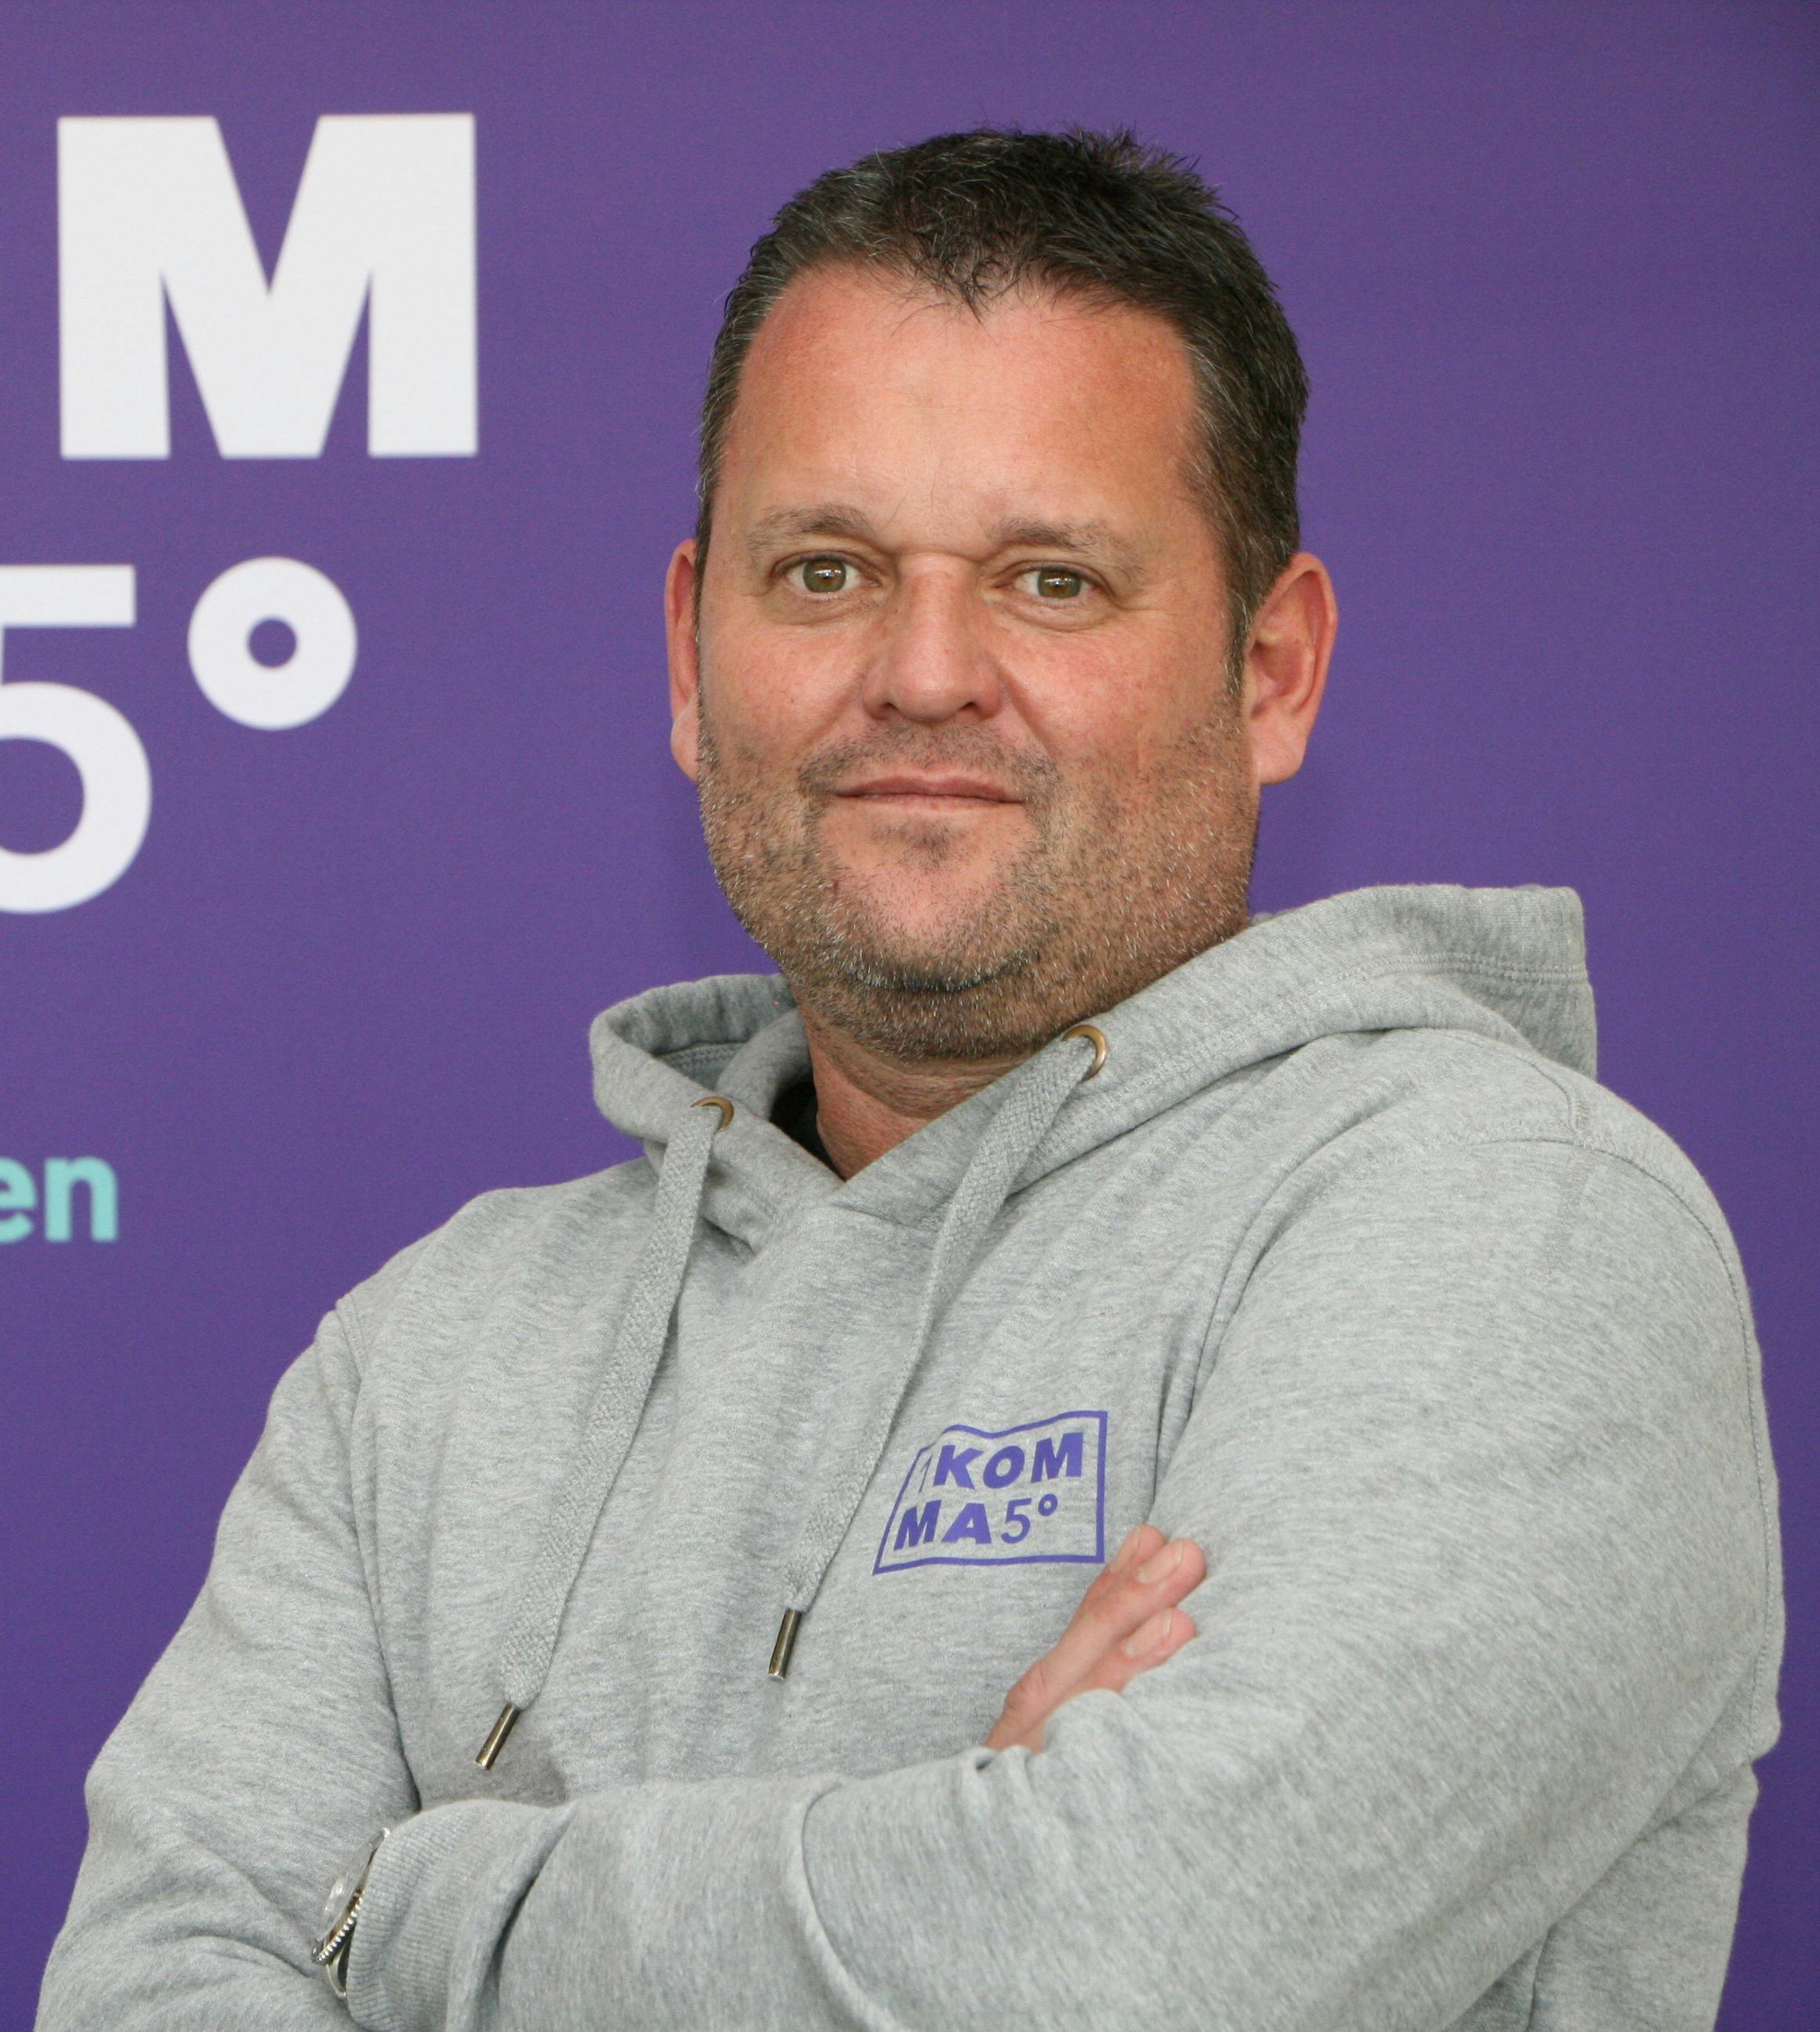 Dietmar Müller Breidenbach